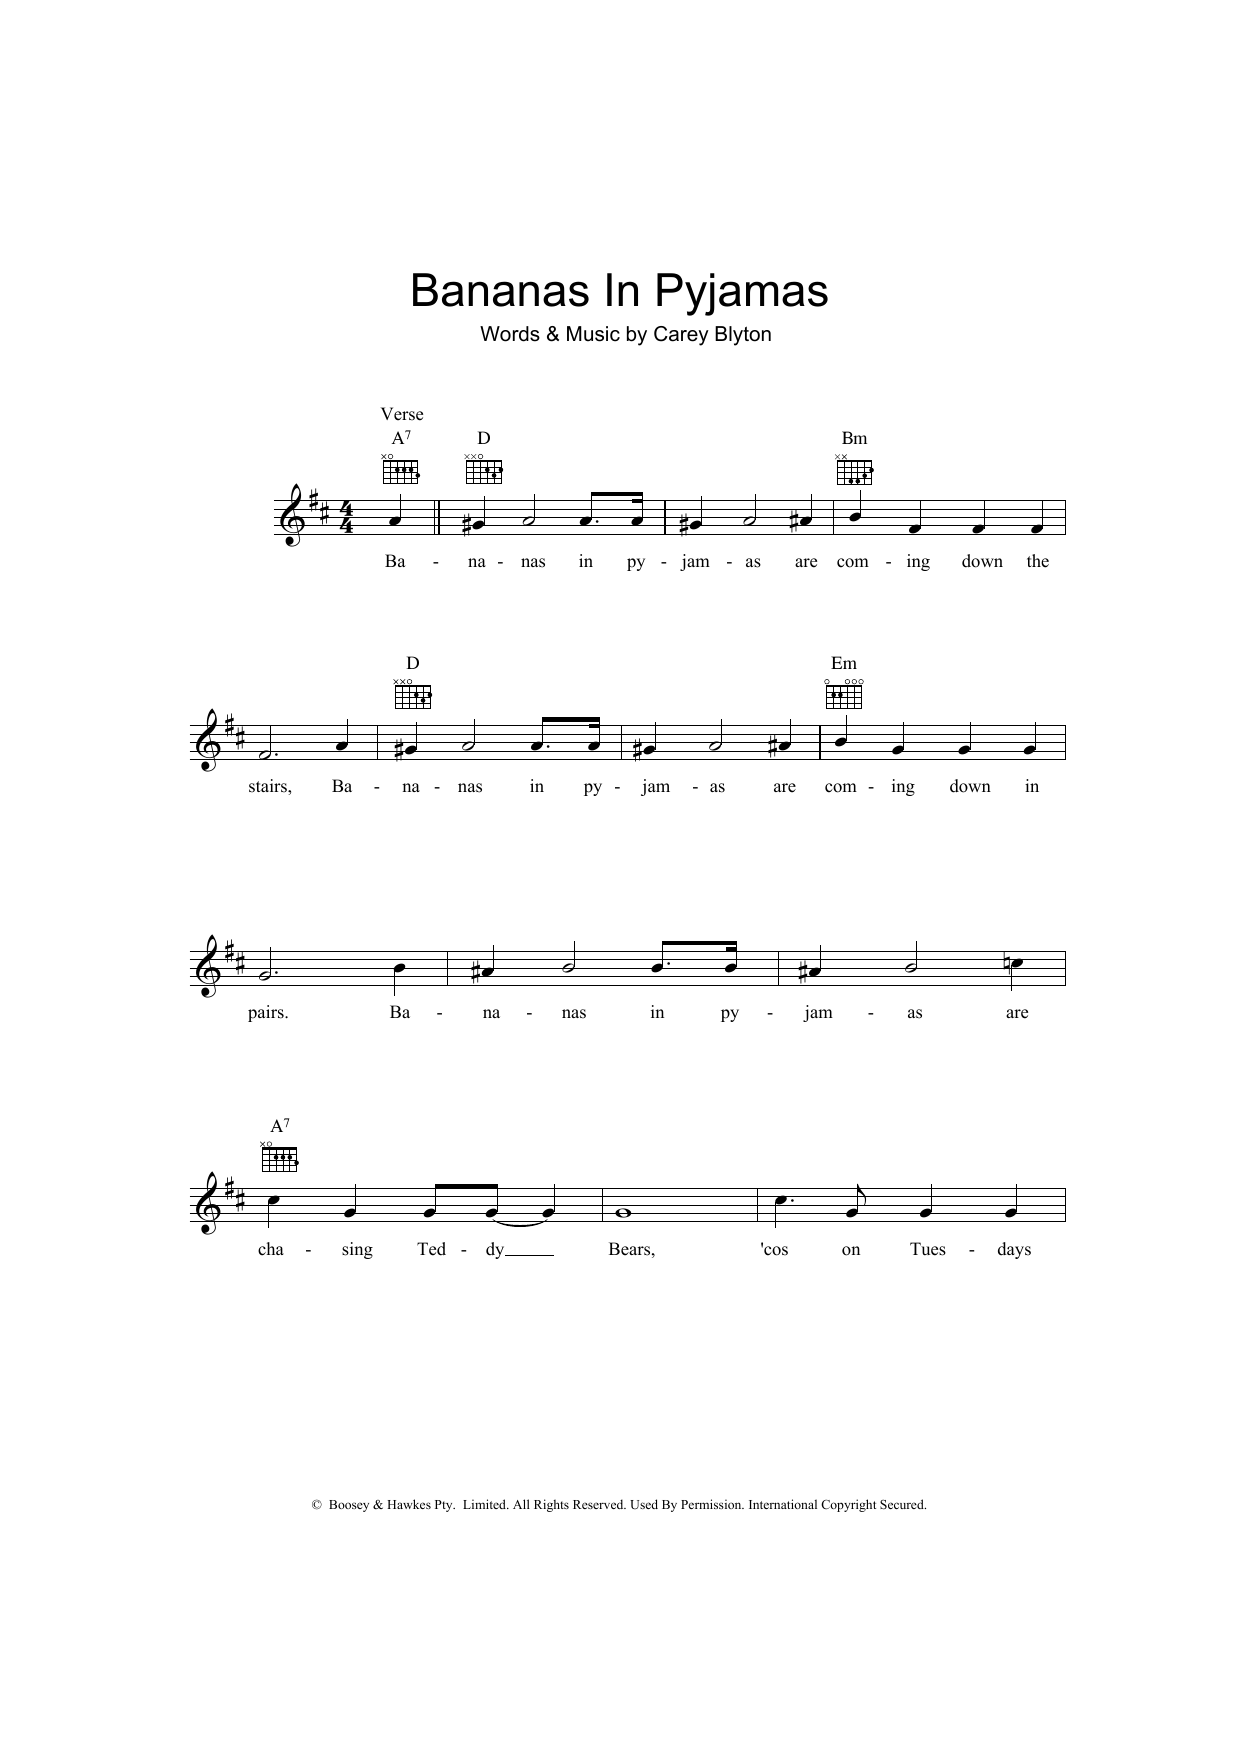 carey-blyton-bananas-in-pyjamas-sheet-music-download-printable